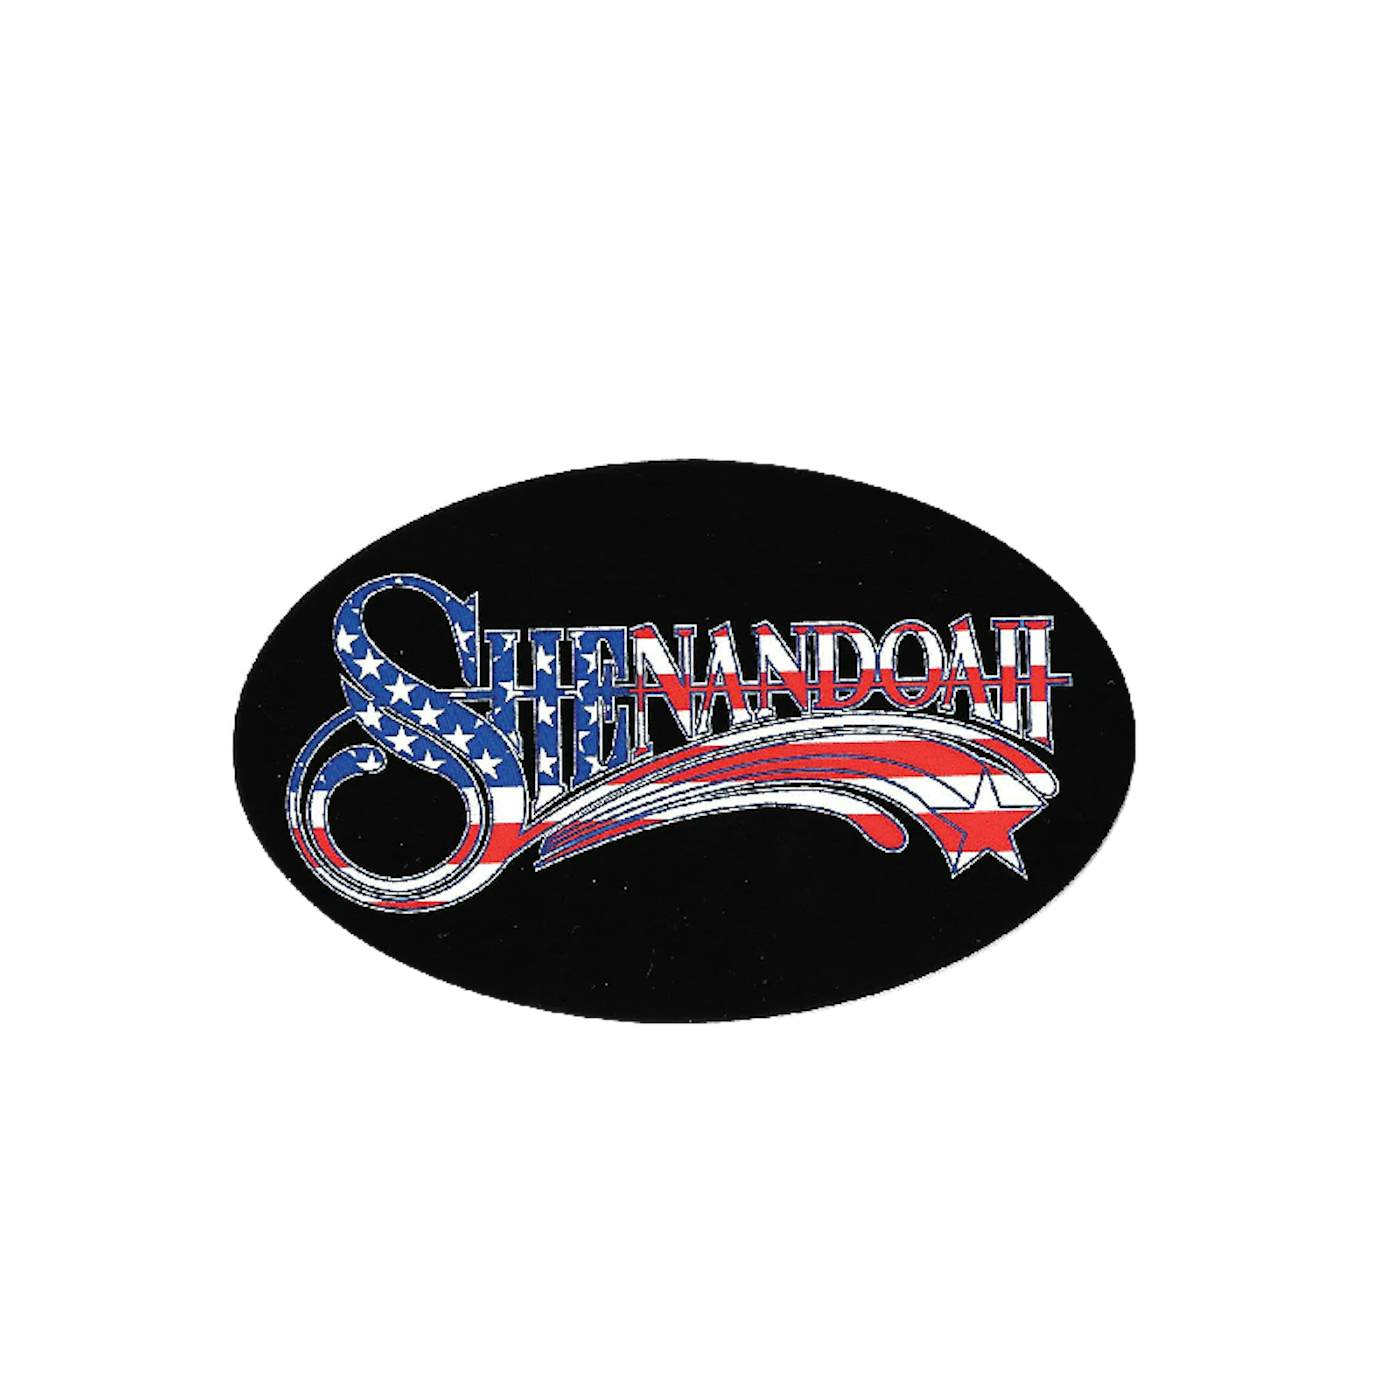 Shenandoah Oval Sticker